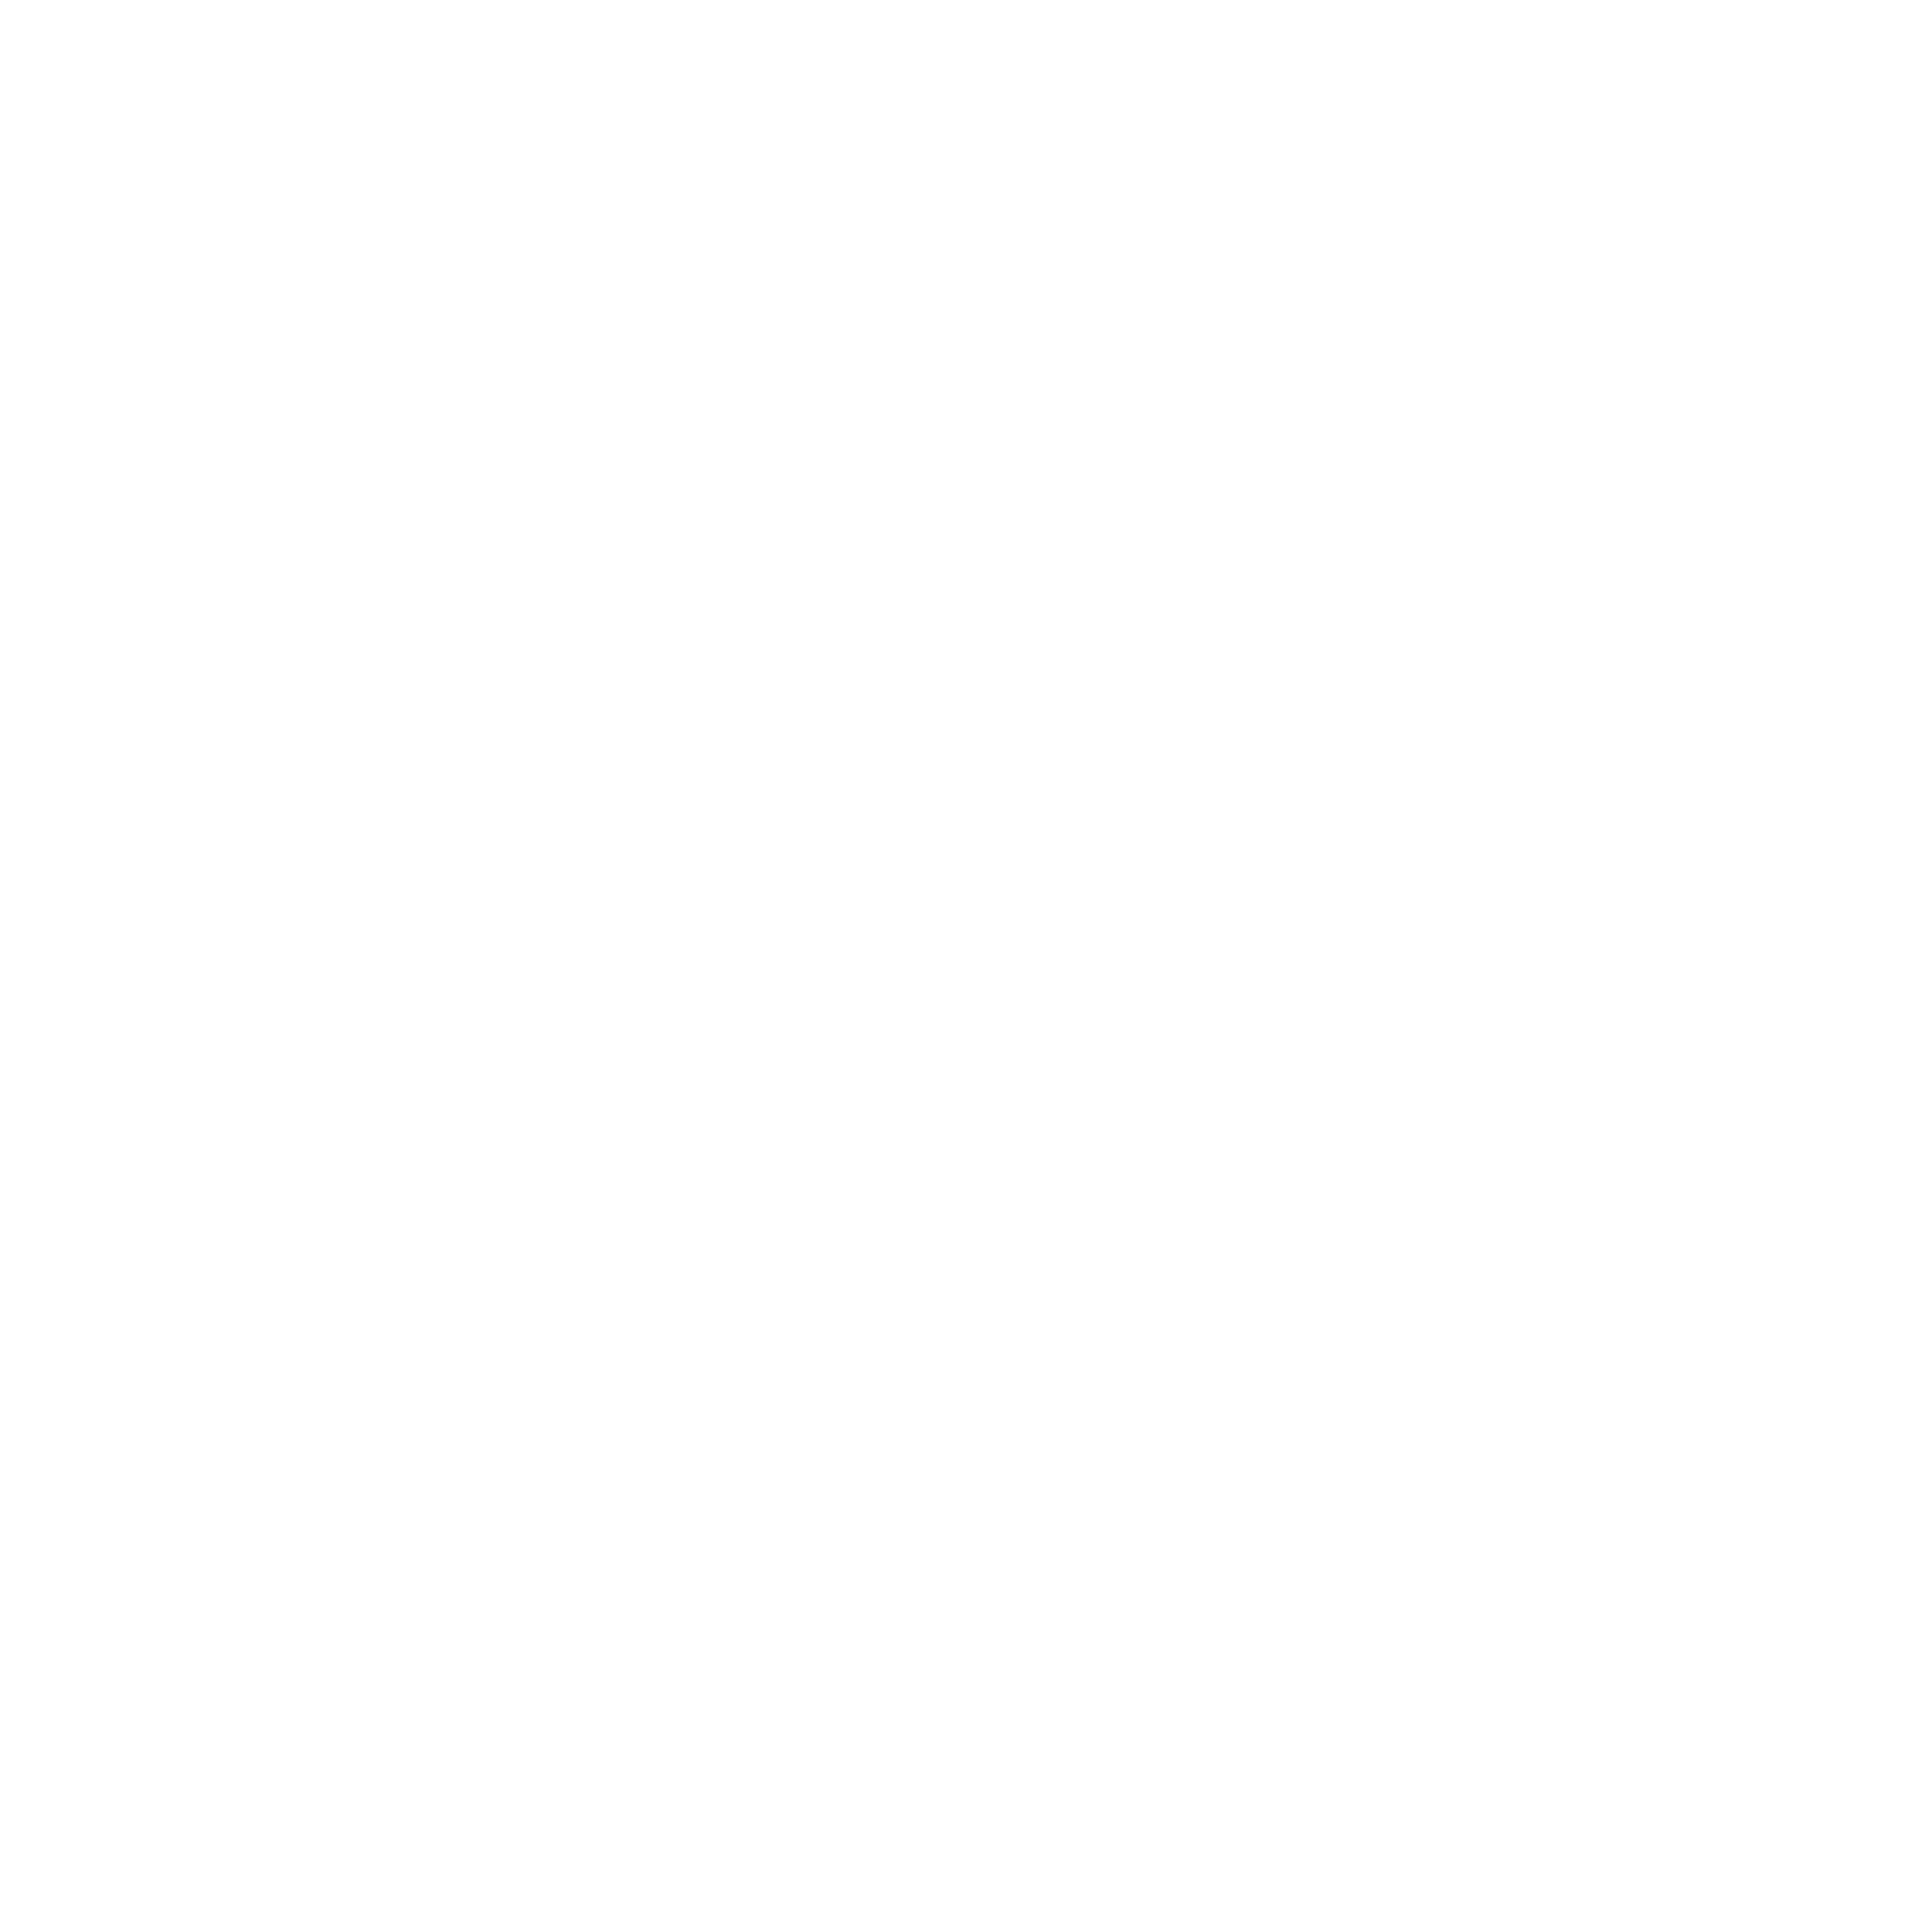 https://cdn.brandonscottphotography.com/wp-content/uploads/2018/01/BrandonScott_LOGO.png